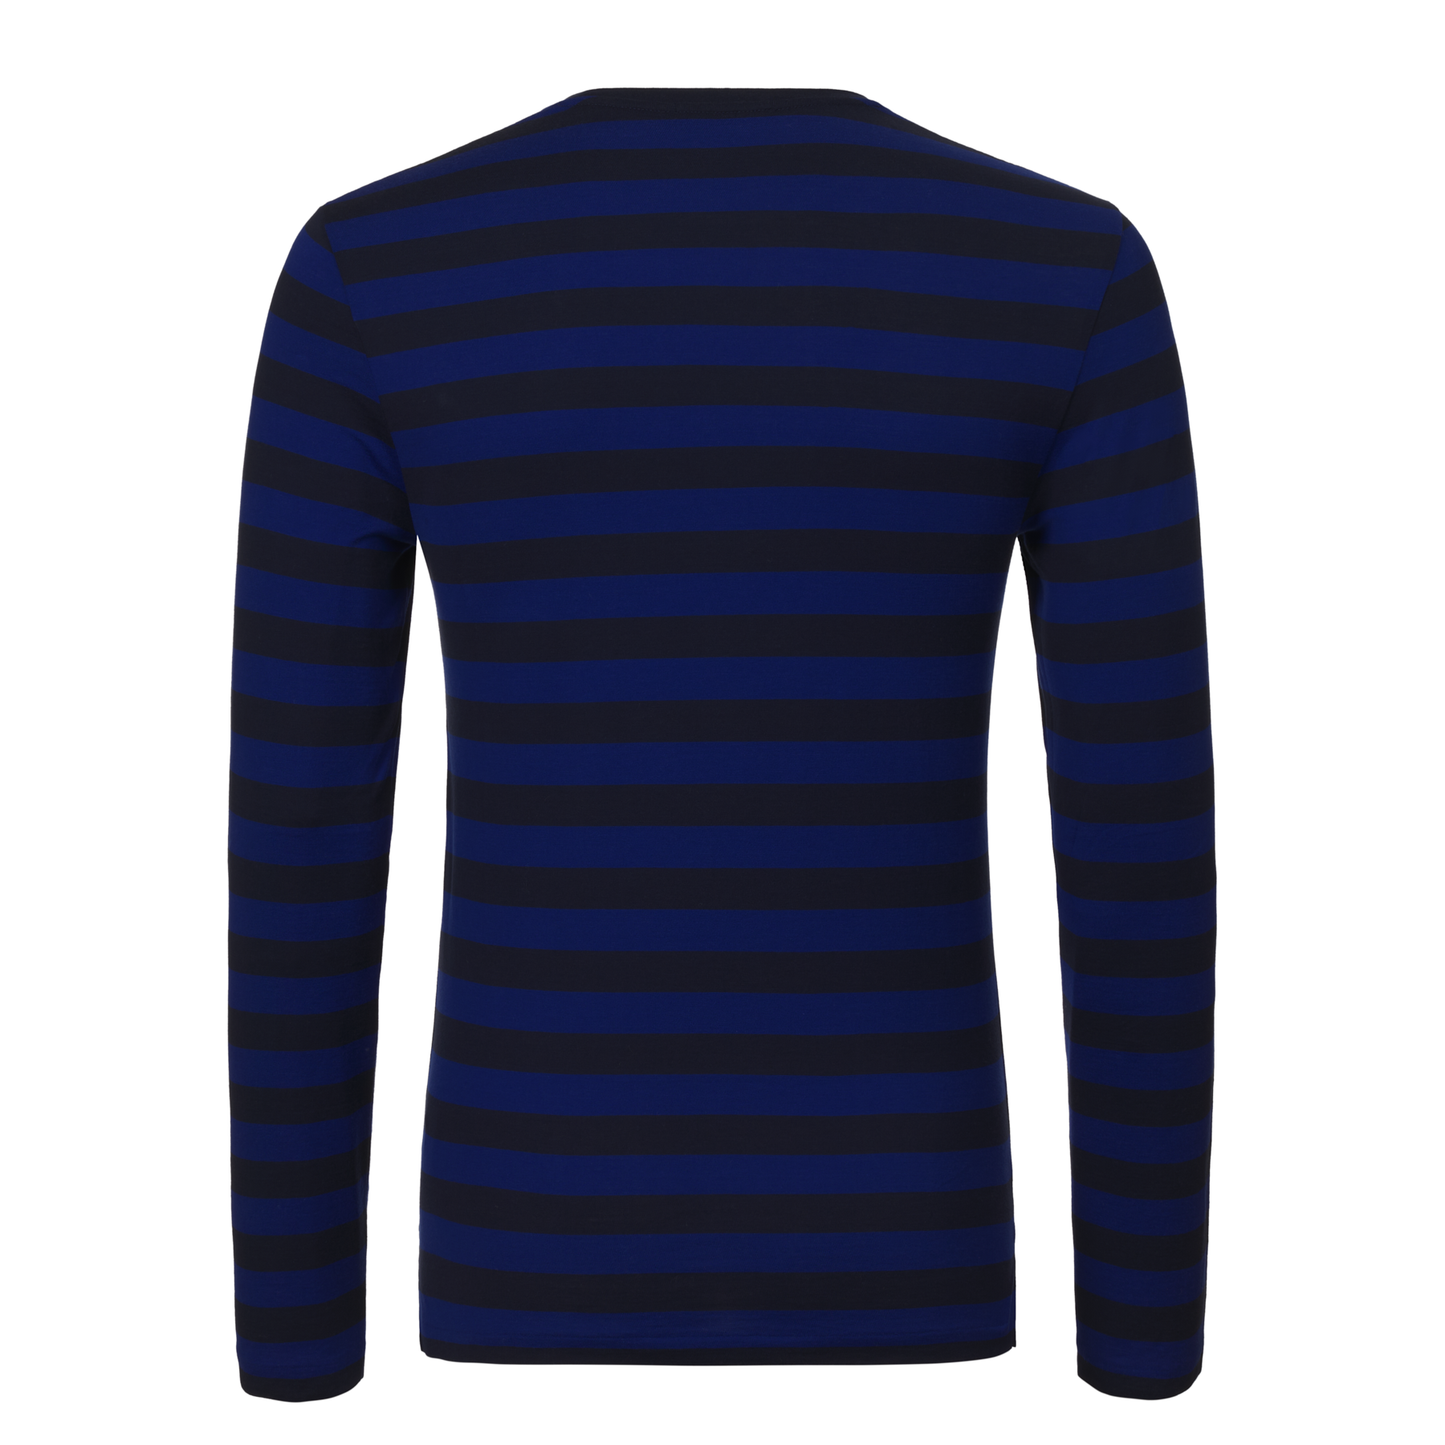 Schmal geschnittenes, gestreiftes T-Shirt aus Baumwoll-Jersey in Marineblau